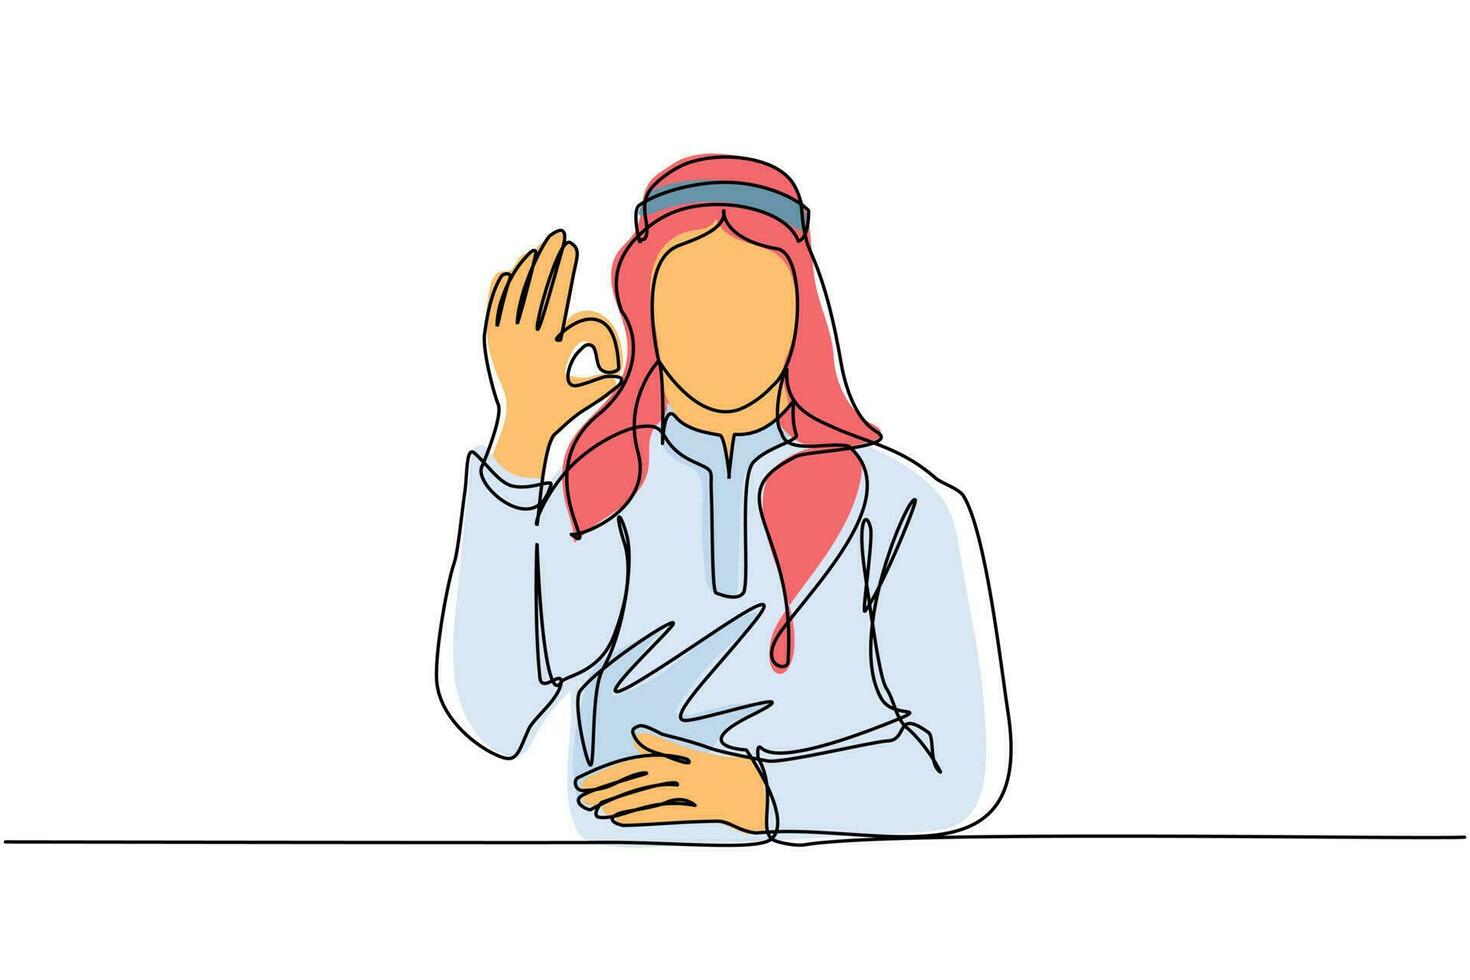 continue een lijntekening arabische man in traditionele kleding gebaren ok teken. oke teken, gebarentaal concept. glimlachend mannetje dat ok teken met vingers toont. enkele lijn tekenen ontwerp vector